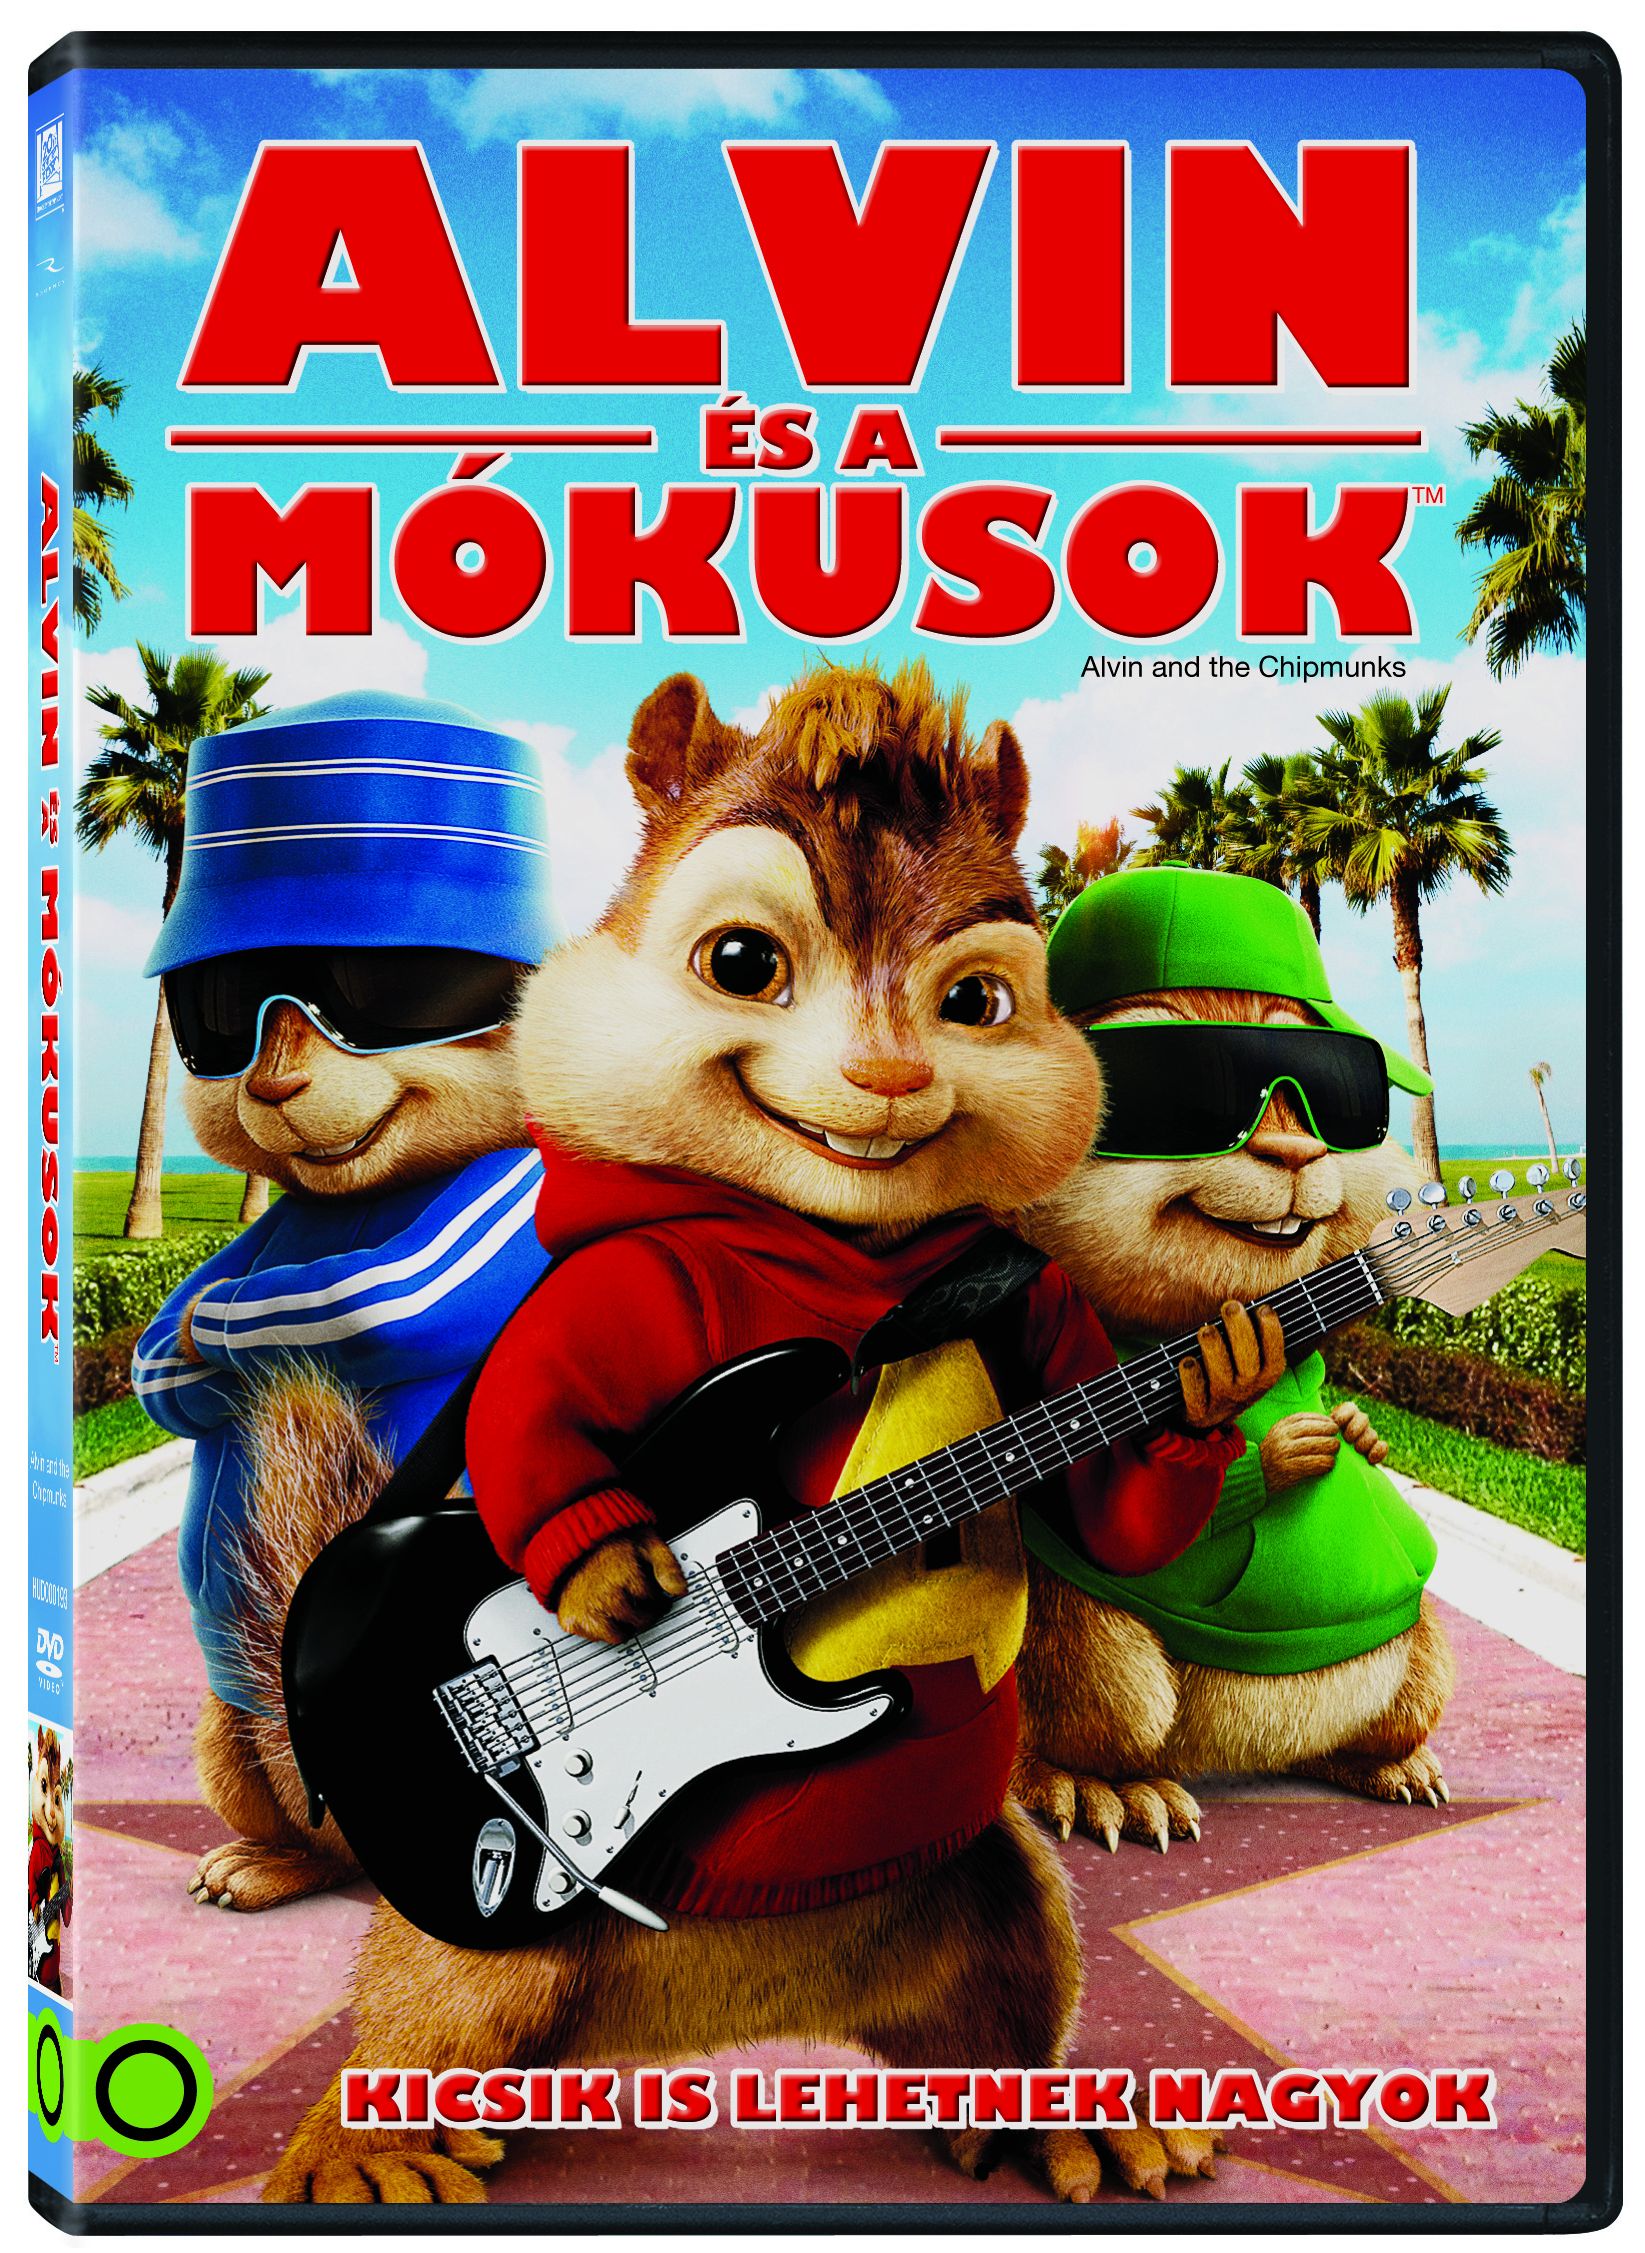 alvin és a mókusok teljes film magyarul video 1